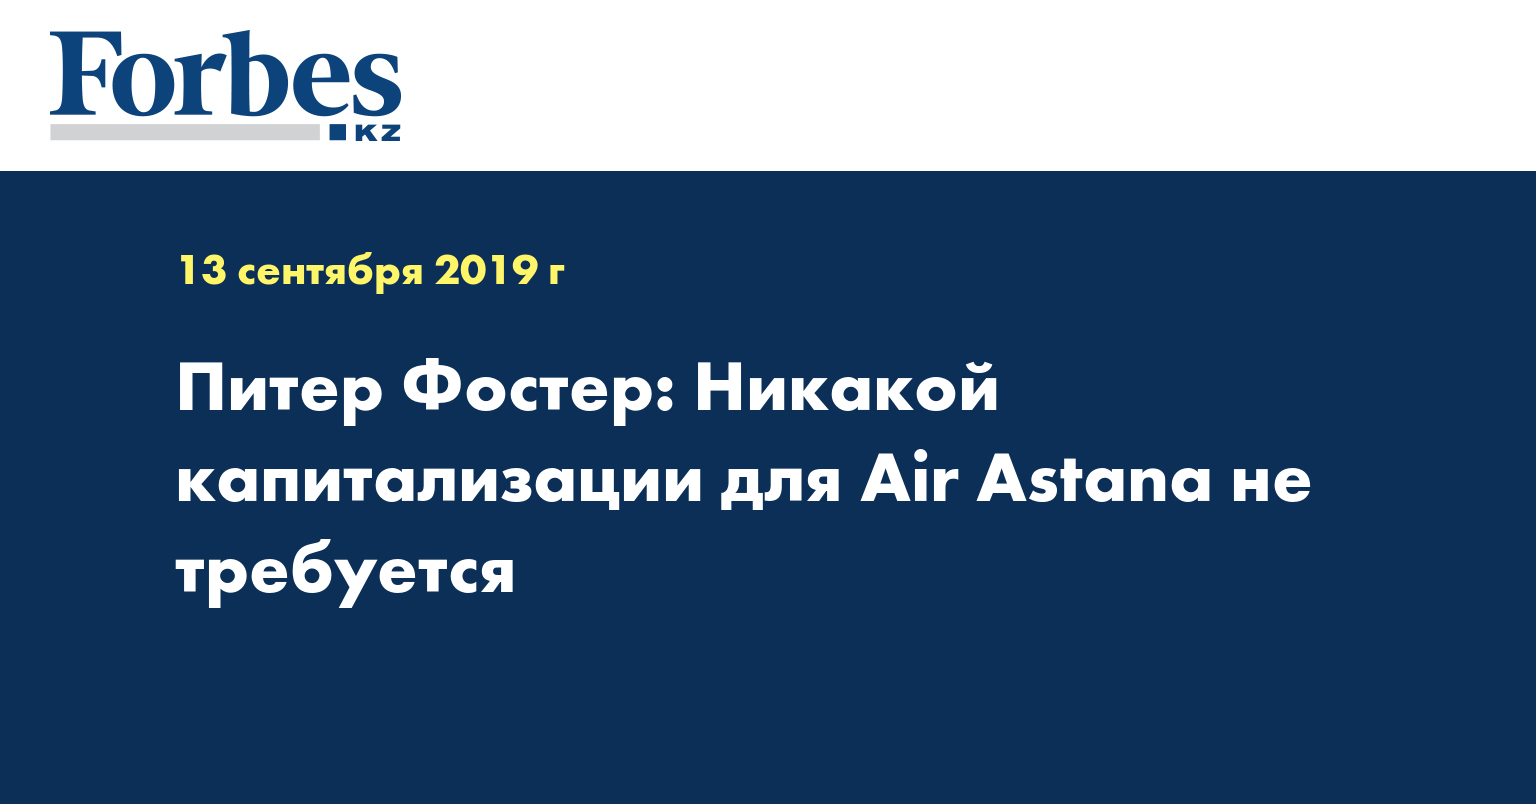 Питер Фостер: Никакой капитализации для Air Astana не требуется